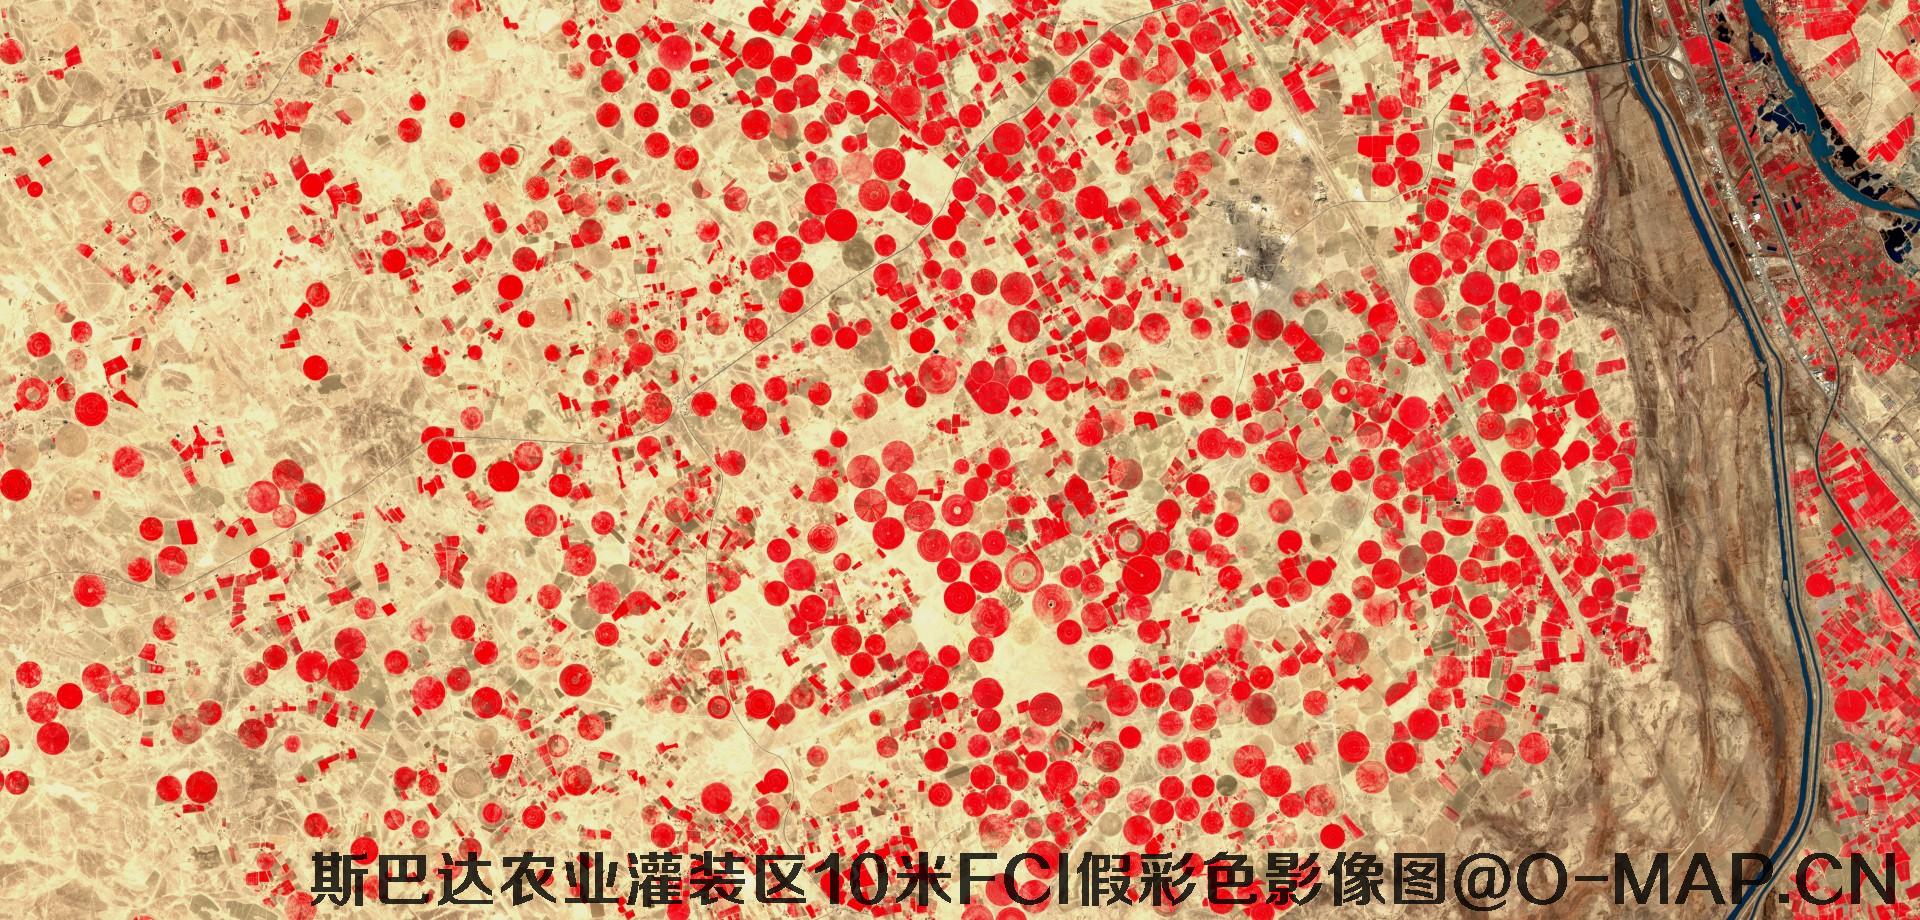 斯巴达市农业灌装区10米FCI假彩色影像图